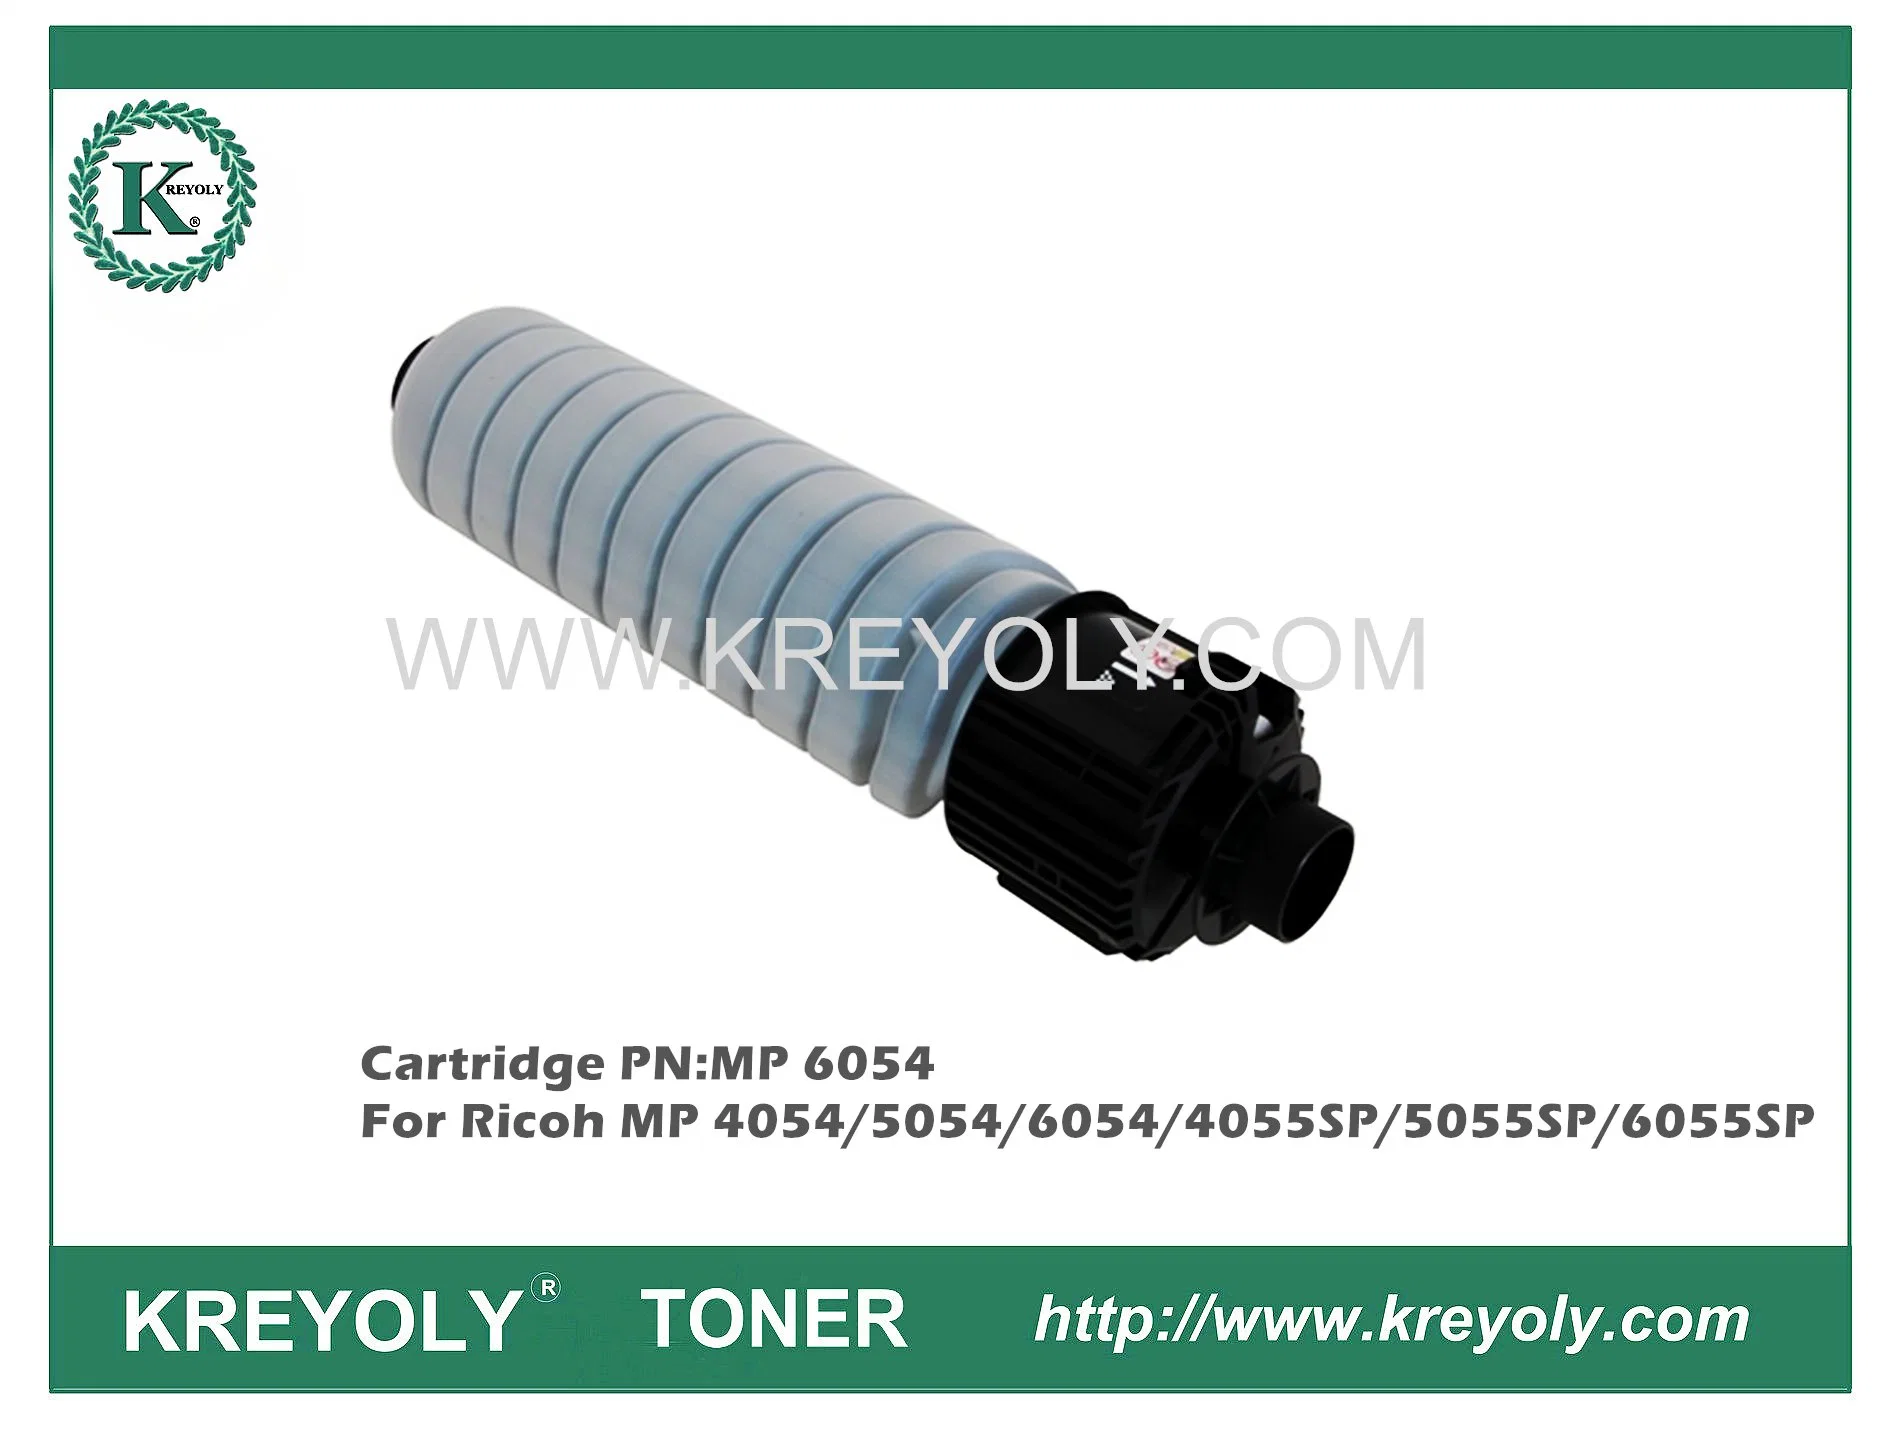 Compatible Toner for Ricoh MP 4054/5054/6054/4055SP/5055SP/6055SP